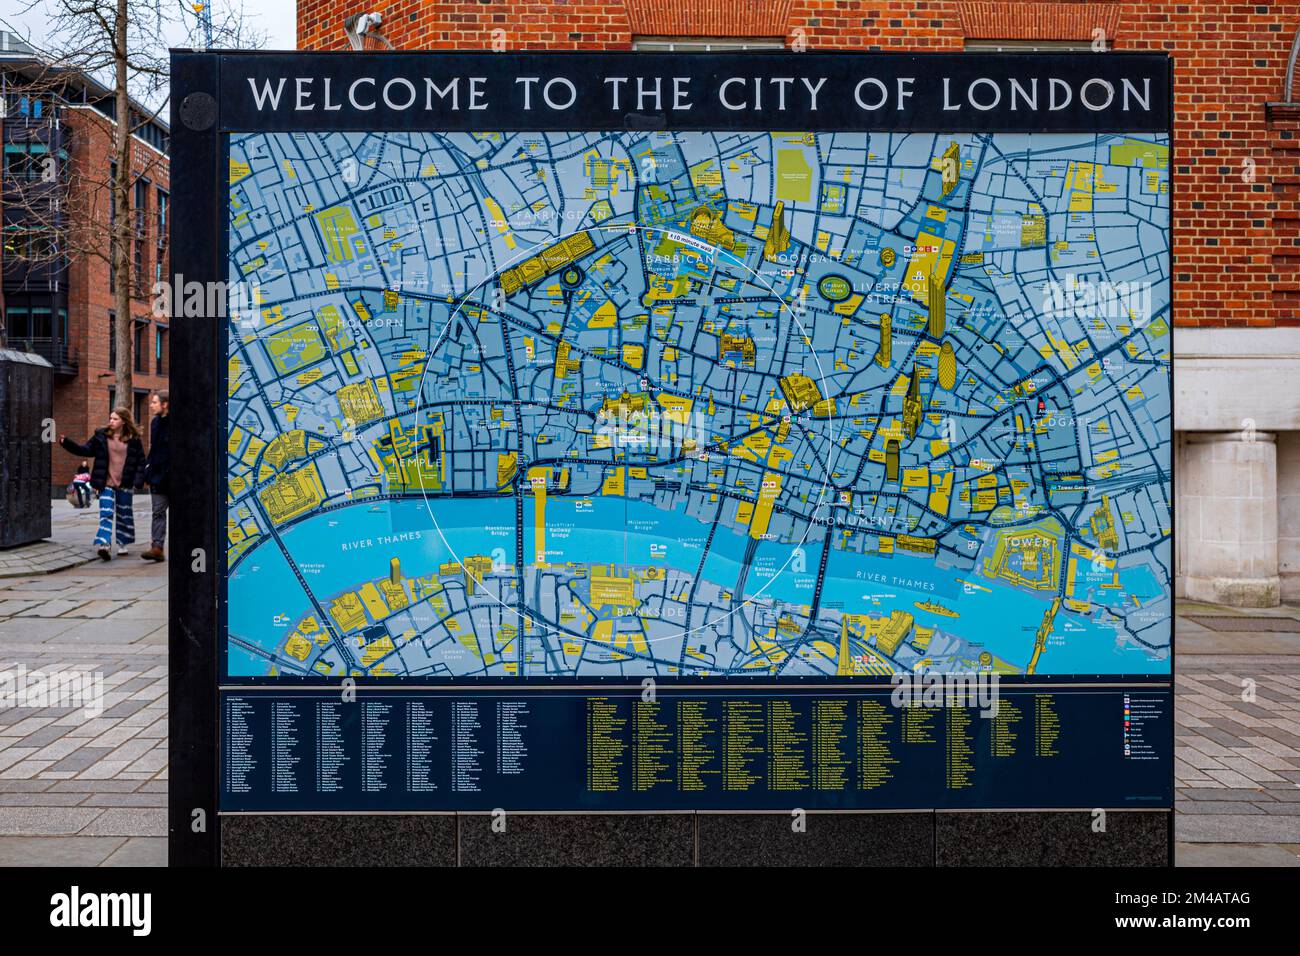 Plan de la ville de Londres. Plan de rue du quartier financier de la ville de Londres. Carte touristique de la ville de Londres. Carte touristique de la ville de Londres. Banque D'Images